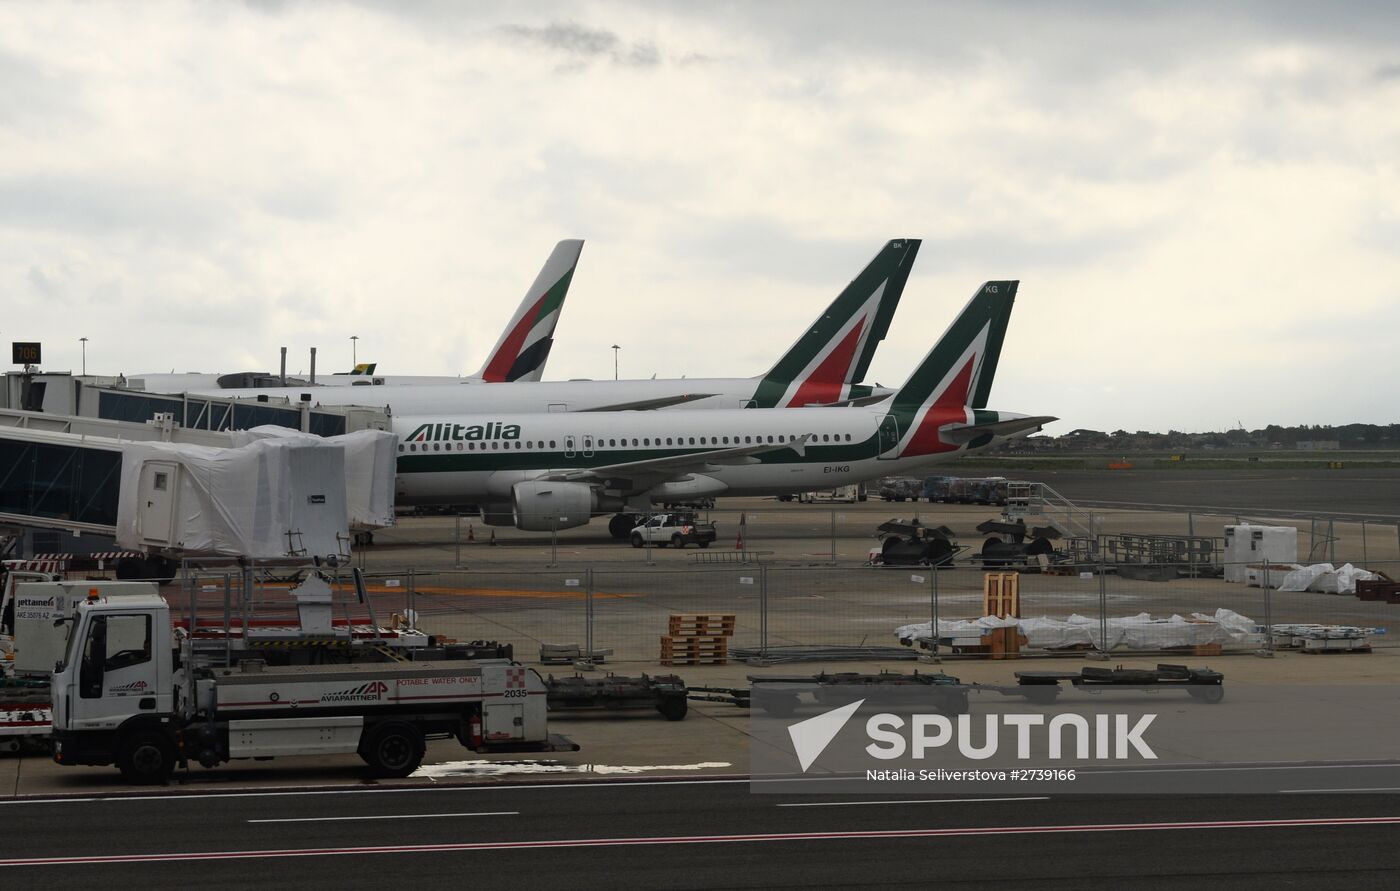 Alitalia aircraft